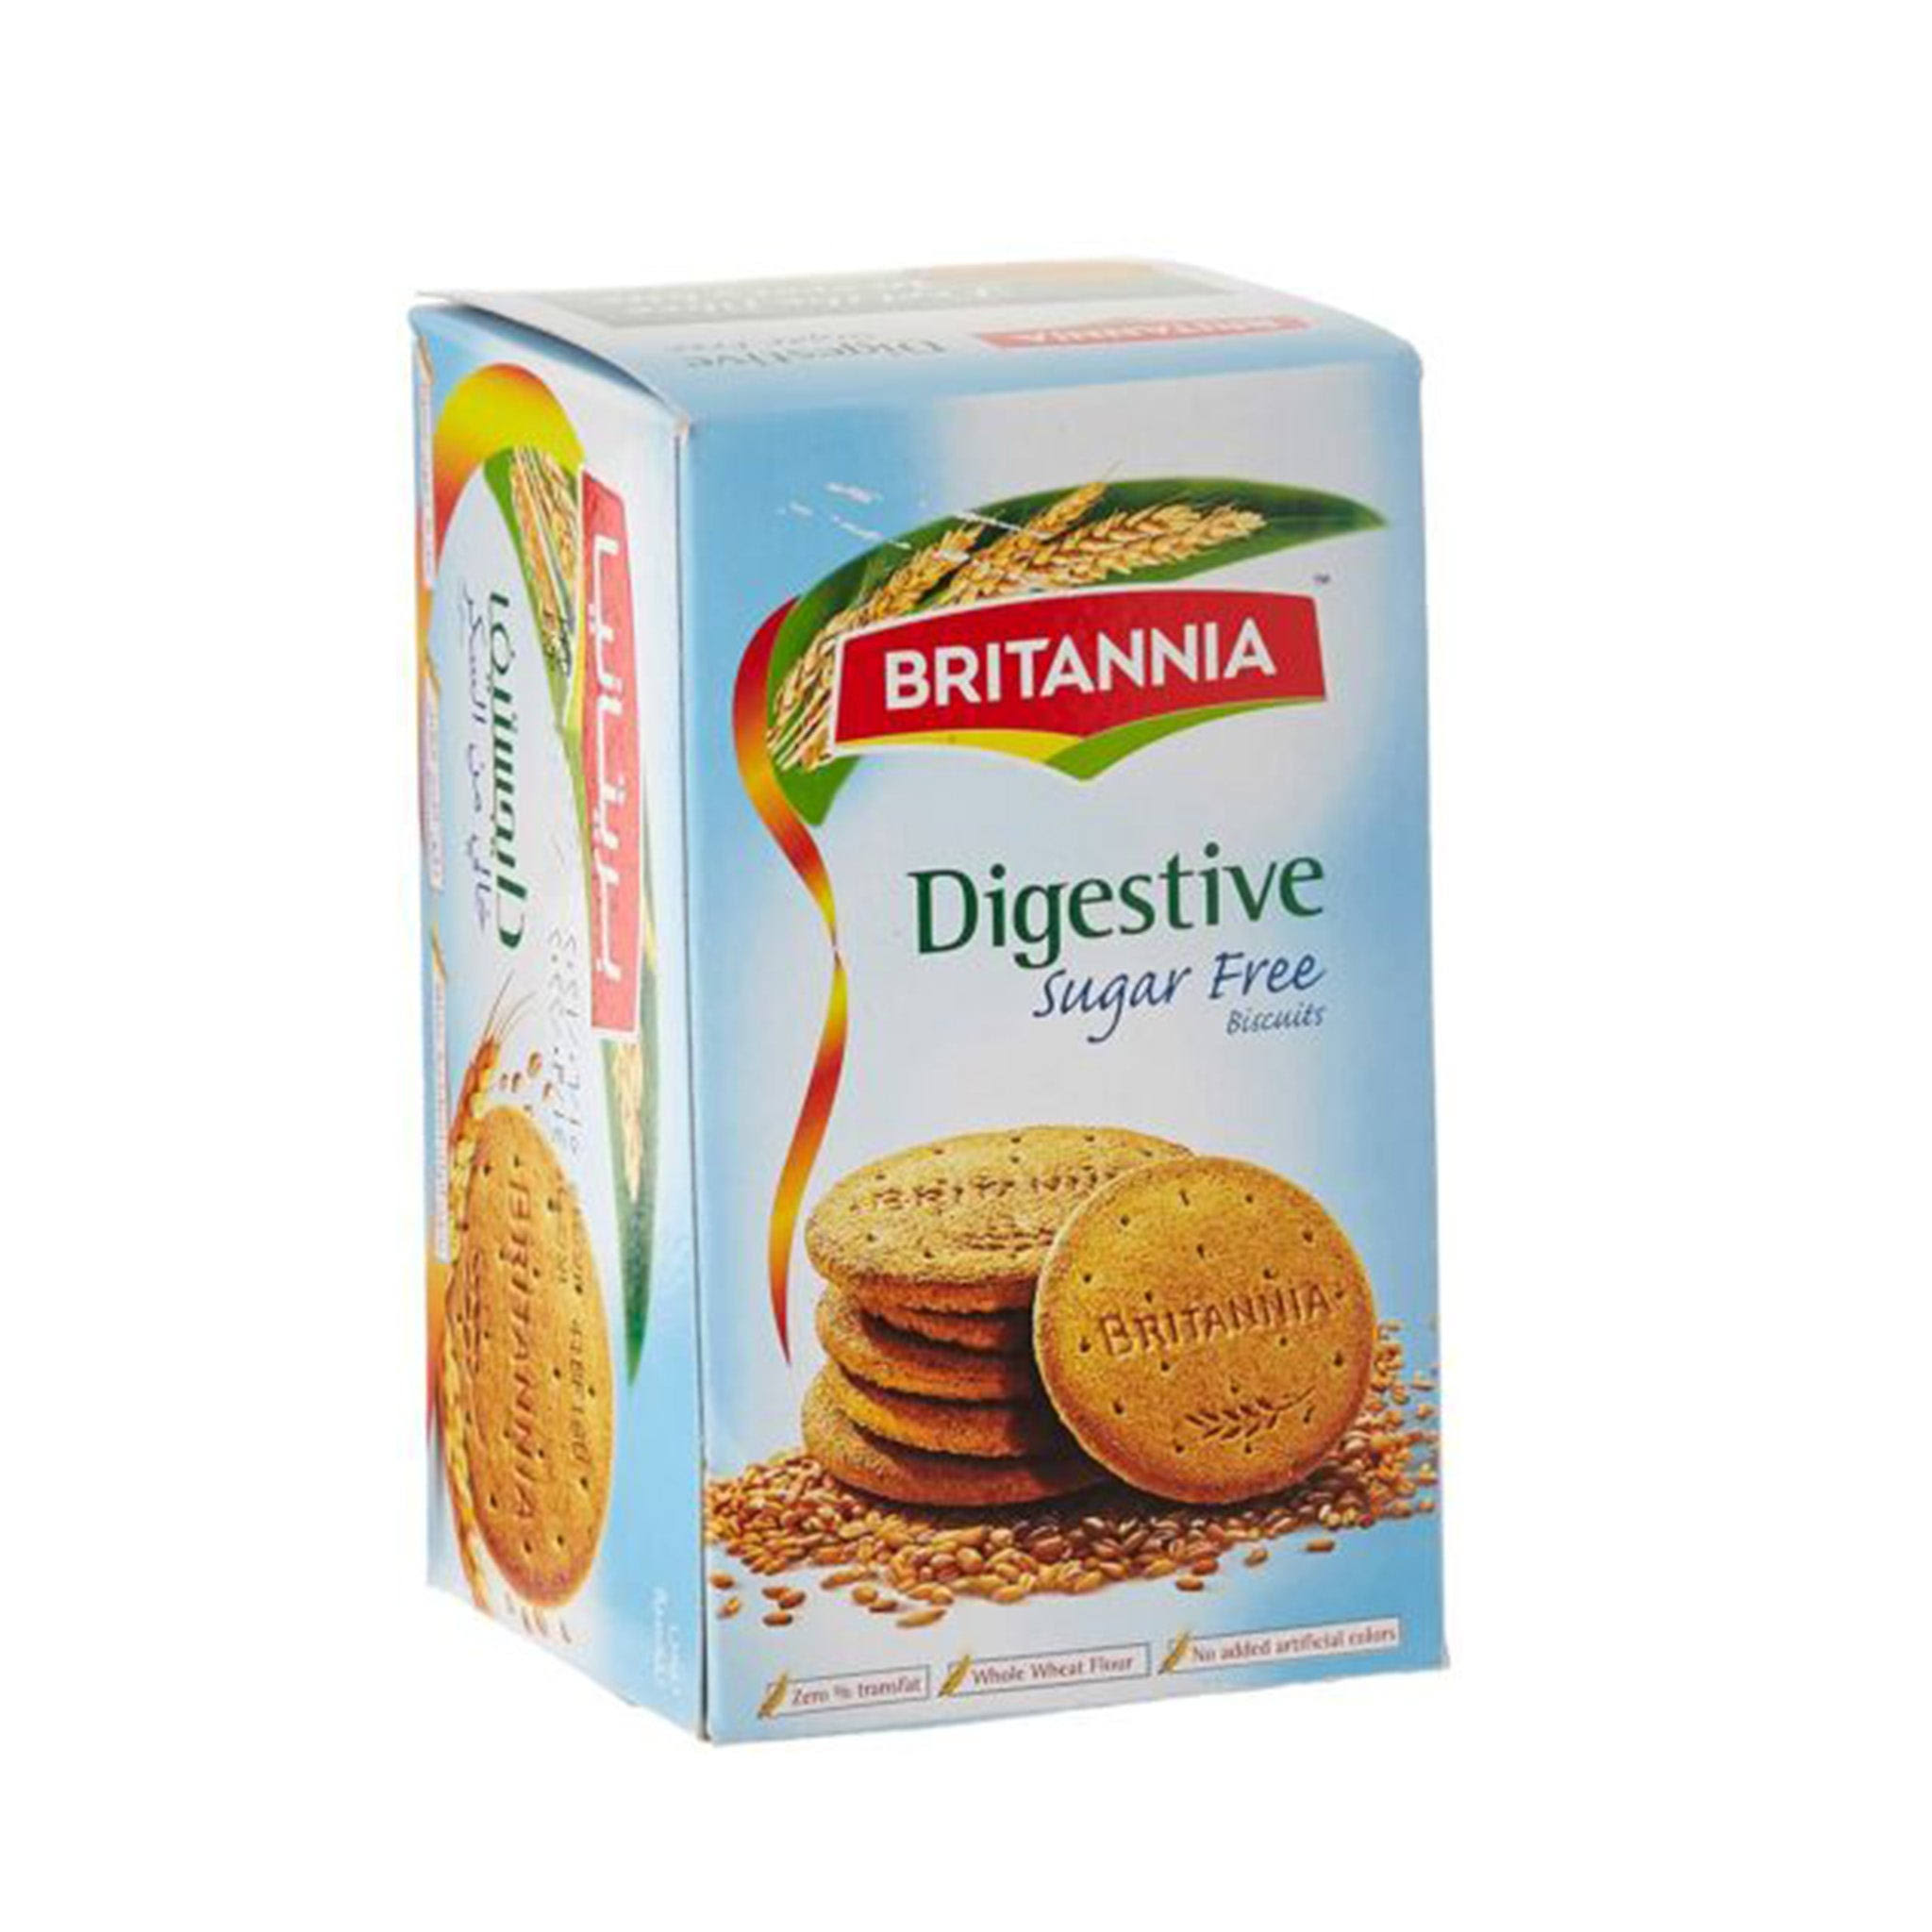 BRITANNIA Digestive Sugar Free Biscuits 12.34oz (350g) - Whole Wheat F